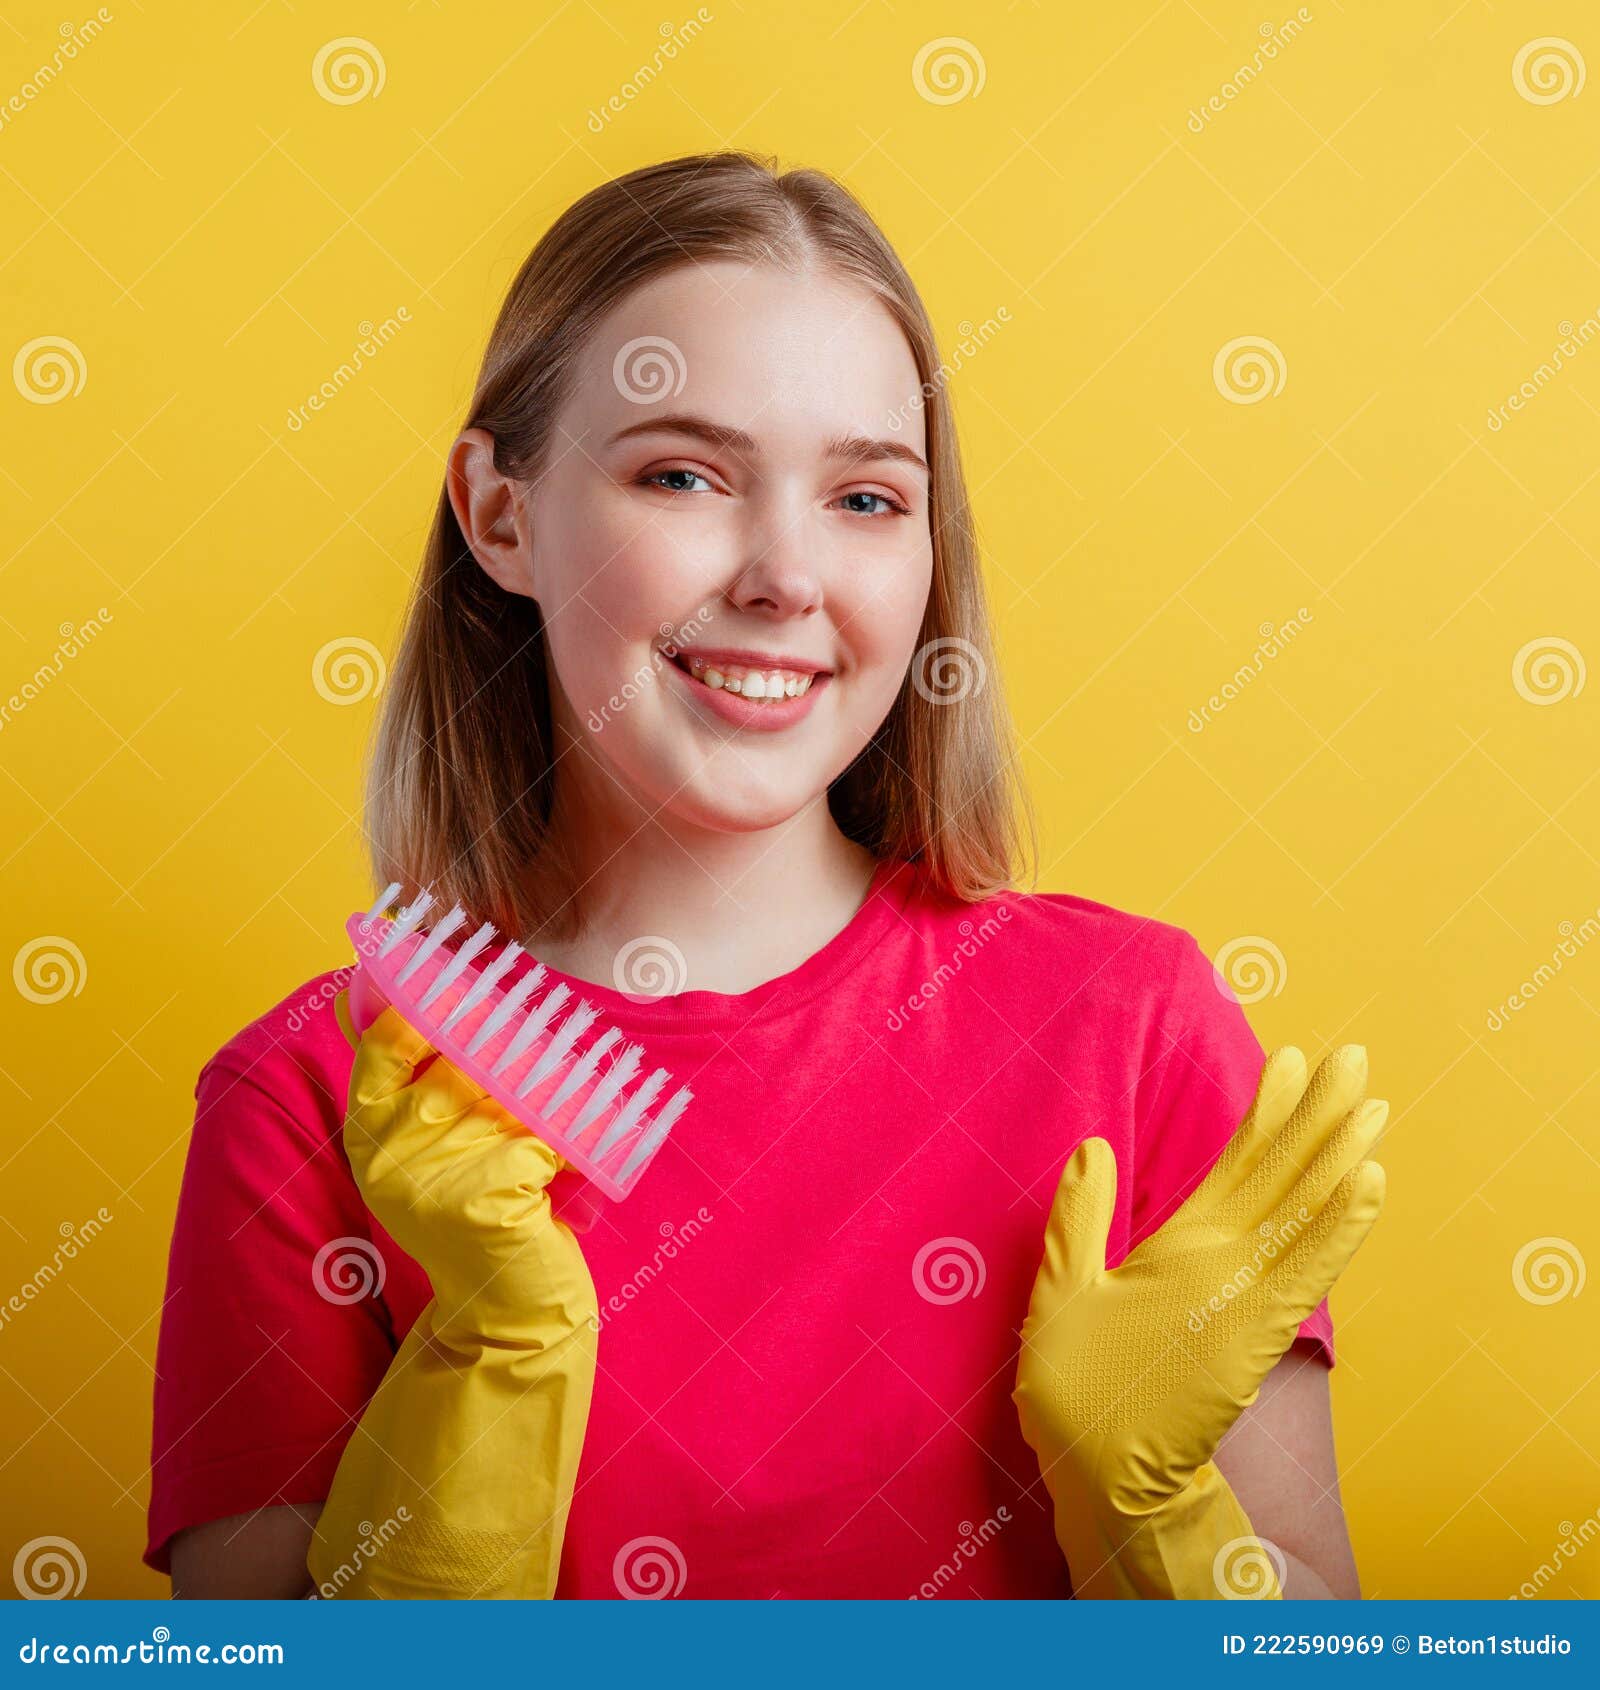 Joven con guantes de goma amarillos listo para limpiar